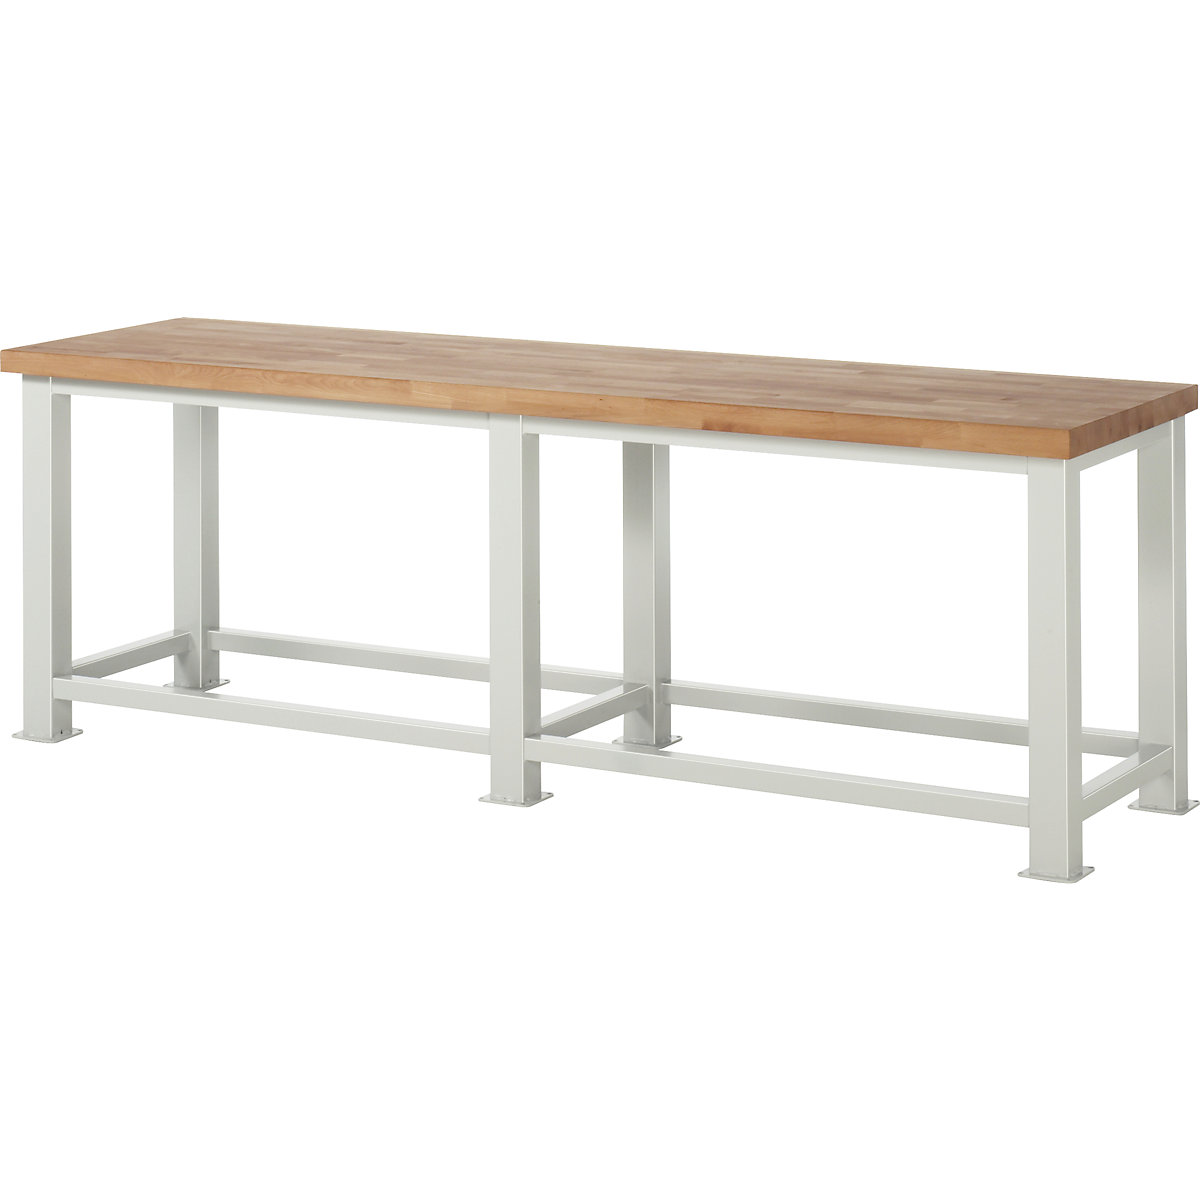 Stół warsztatowy do dużych obciążeń – RAU, grubość blatu: 50 mm, szer. x głęb. 2500 x 700 mm-1